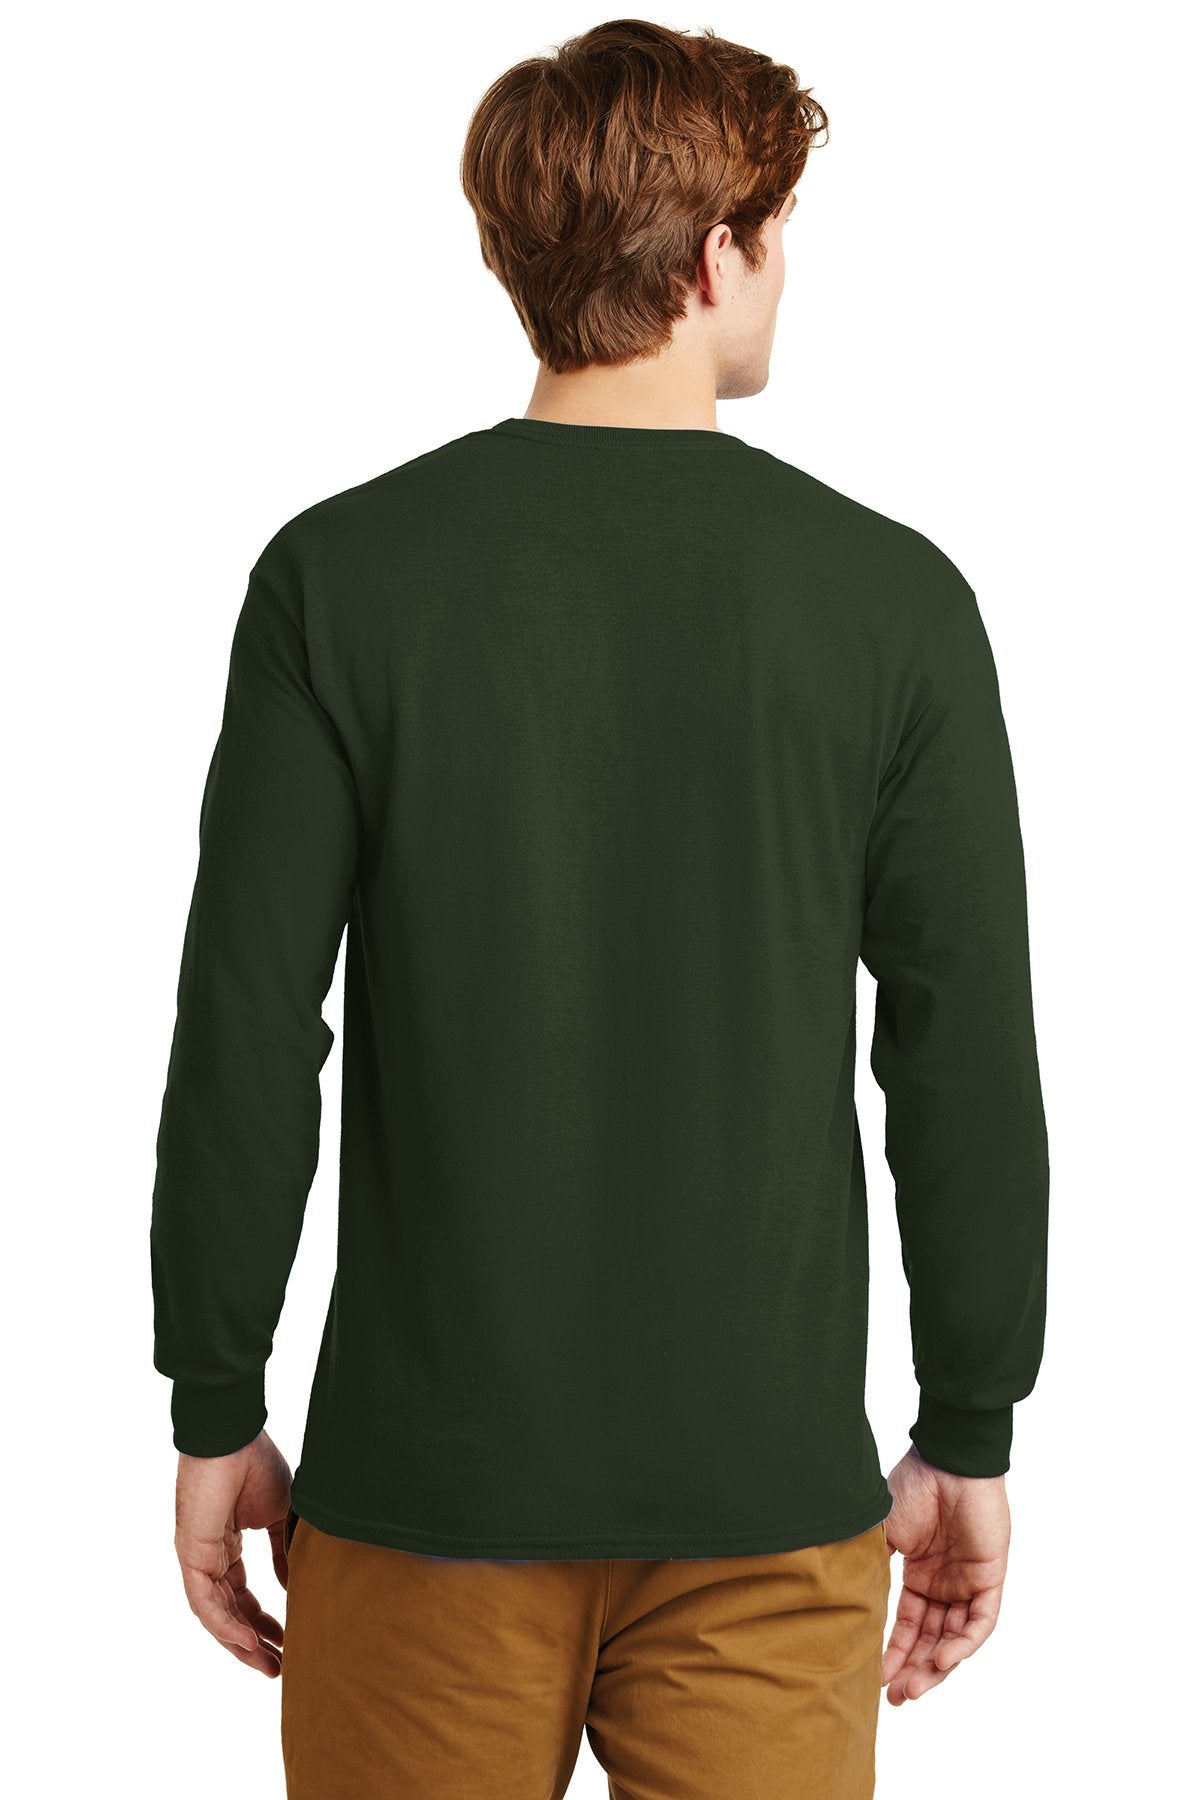 gildan ultra cotton long sleeve t shirt g2400 forest green